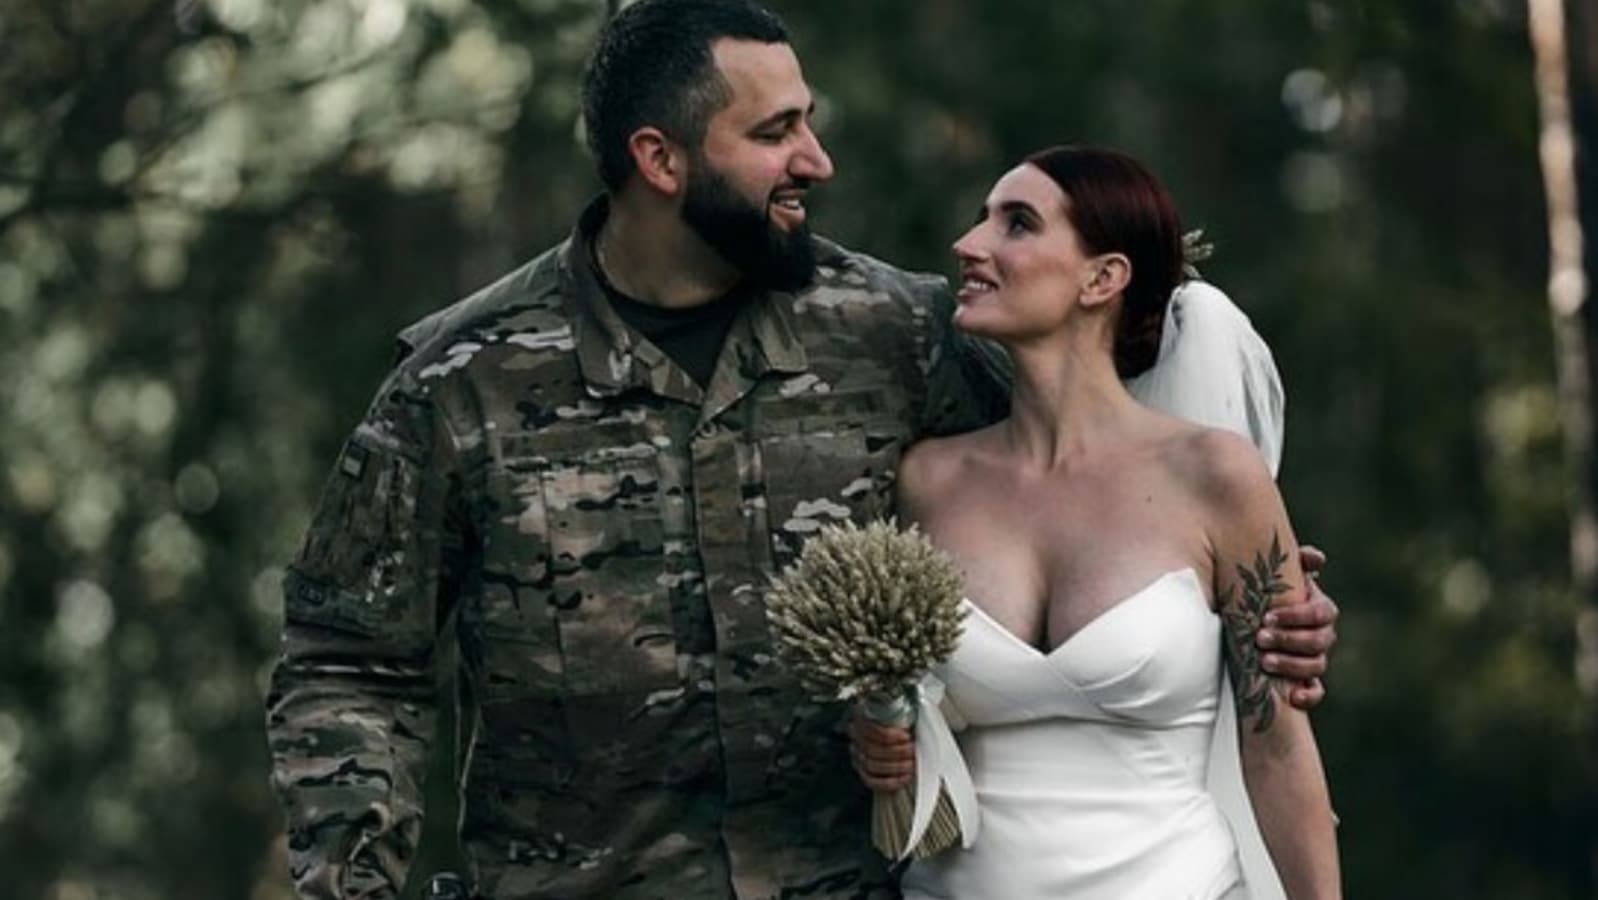 Love in war: Ukrainian sniper marries soldier she met during war